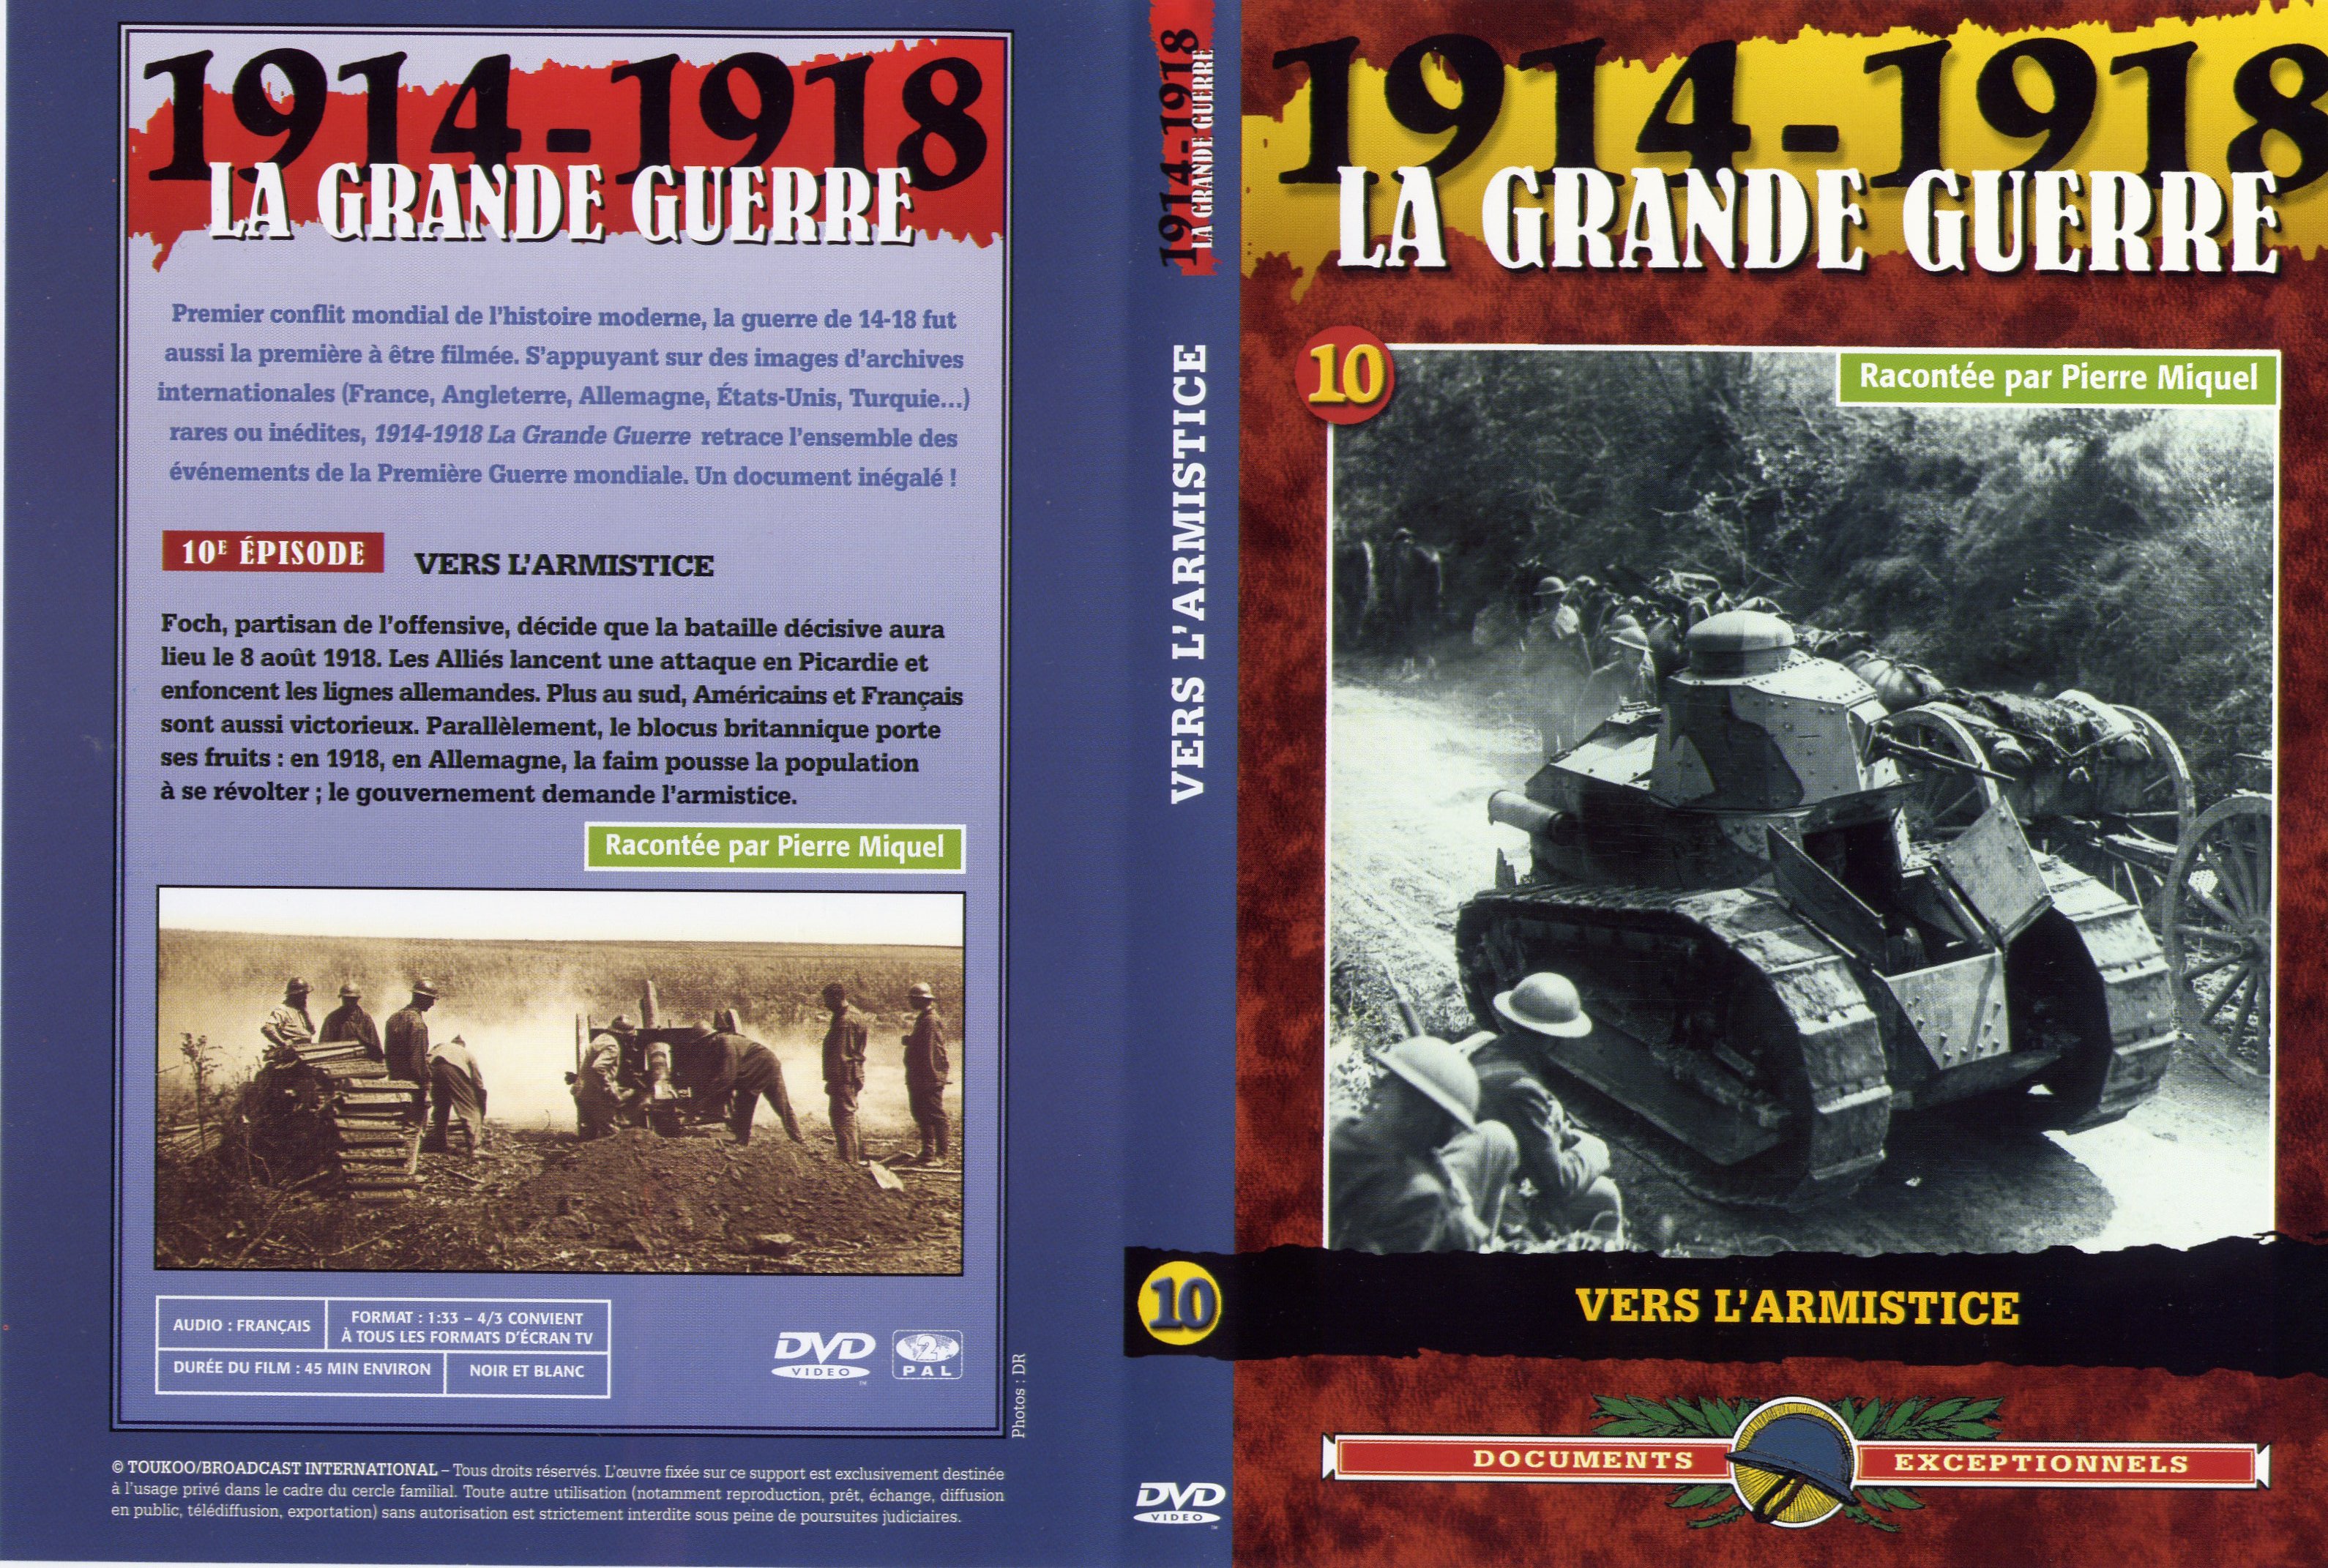 Jaquette DVD La grande guerre 1914 1918 vol 10